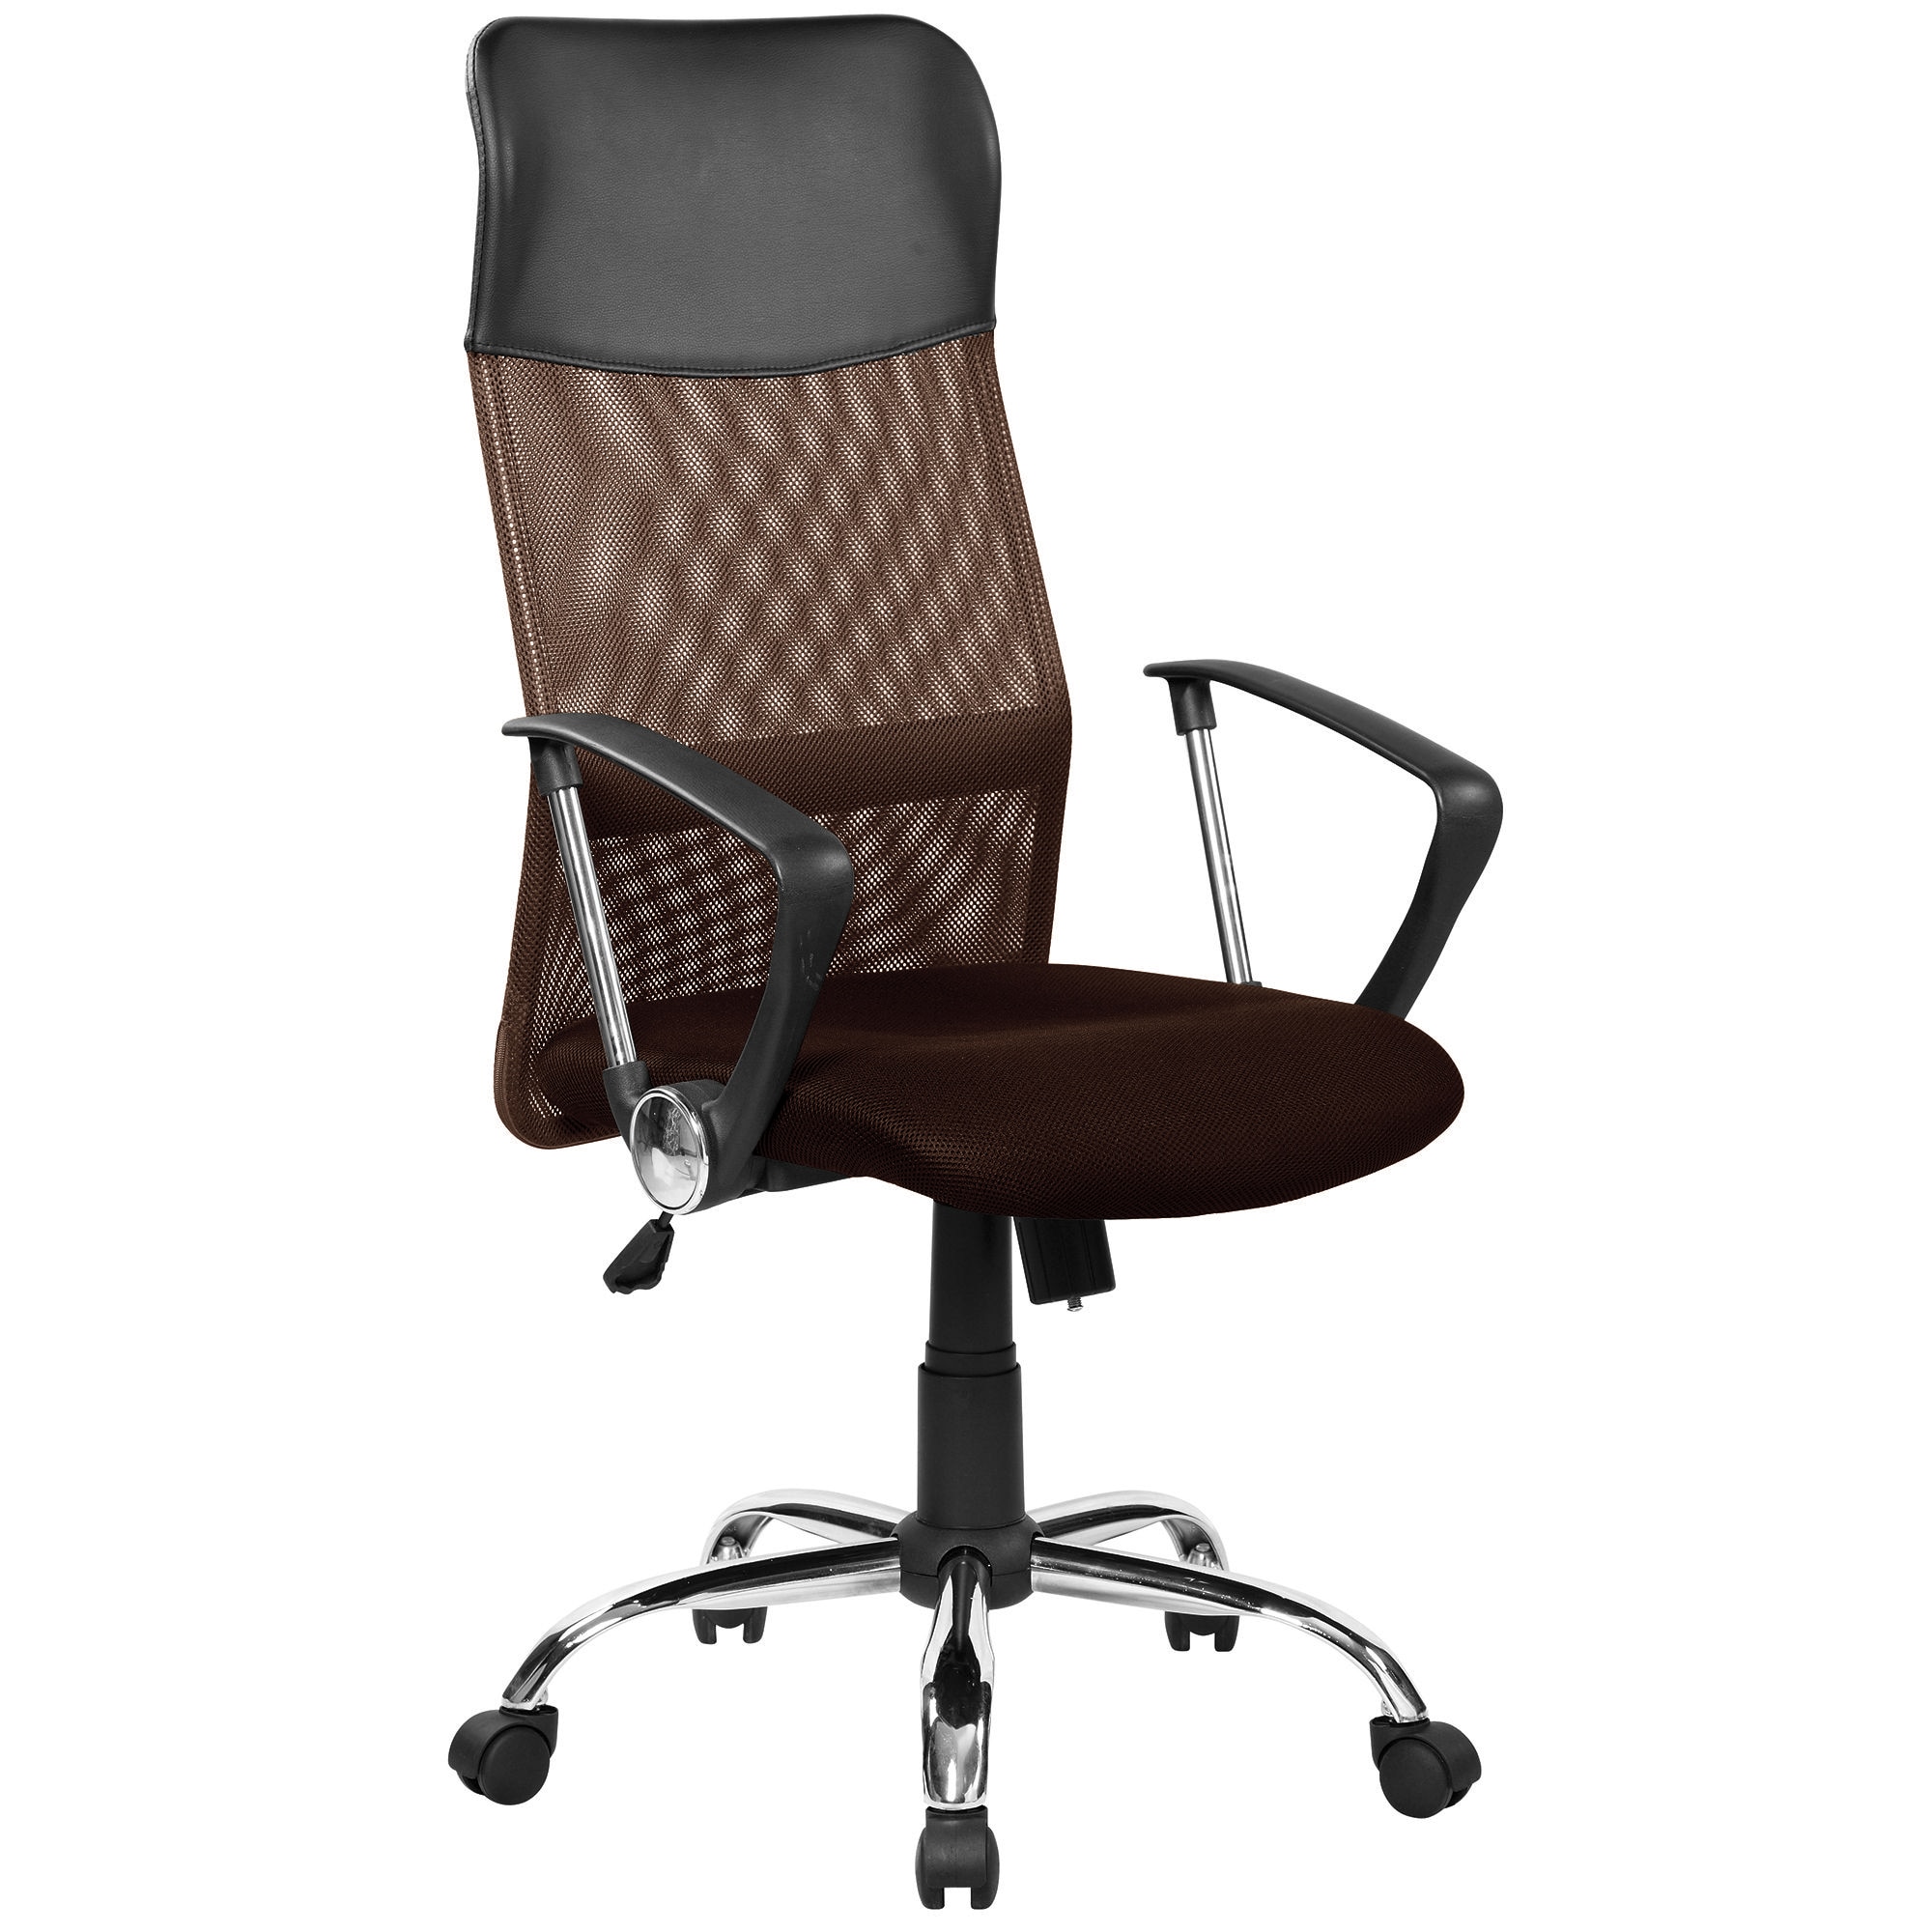 Стул офисный chair. Кресло руководителя FX-139. Кресло direct 3012h. Кресло офисное с  стандарт BIFMA 5,1.